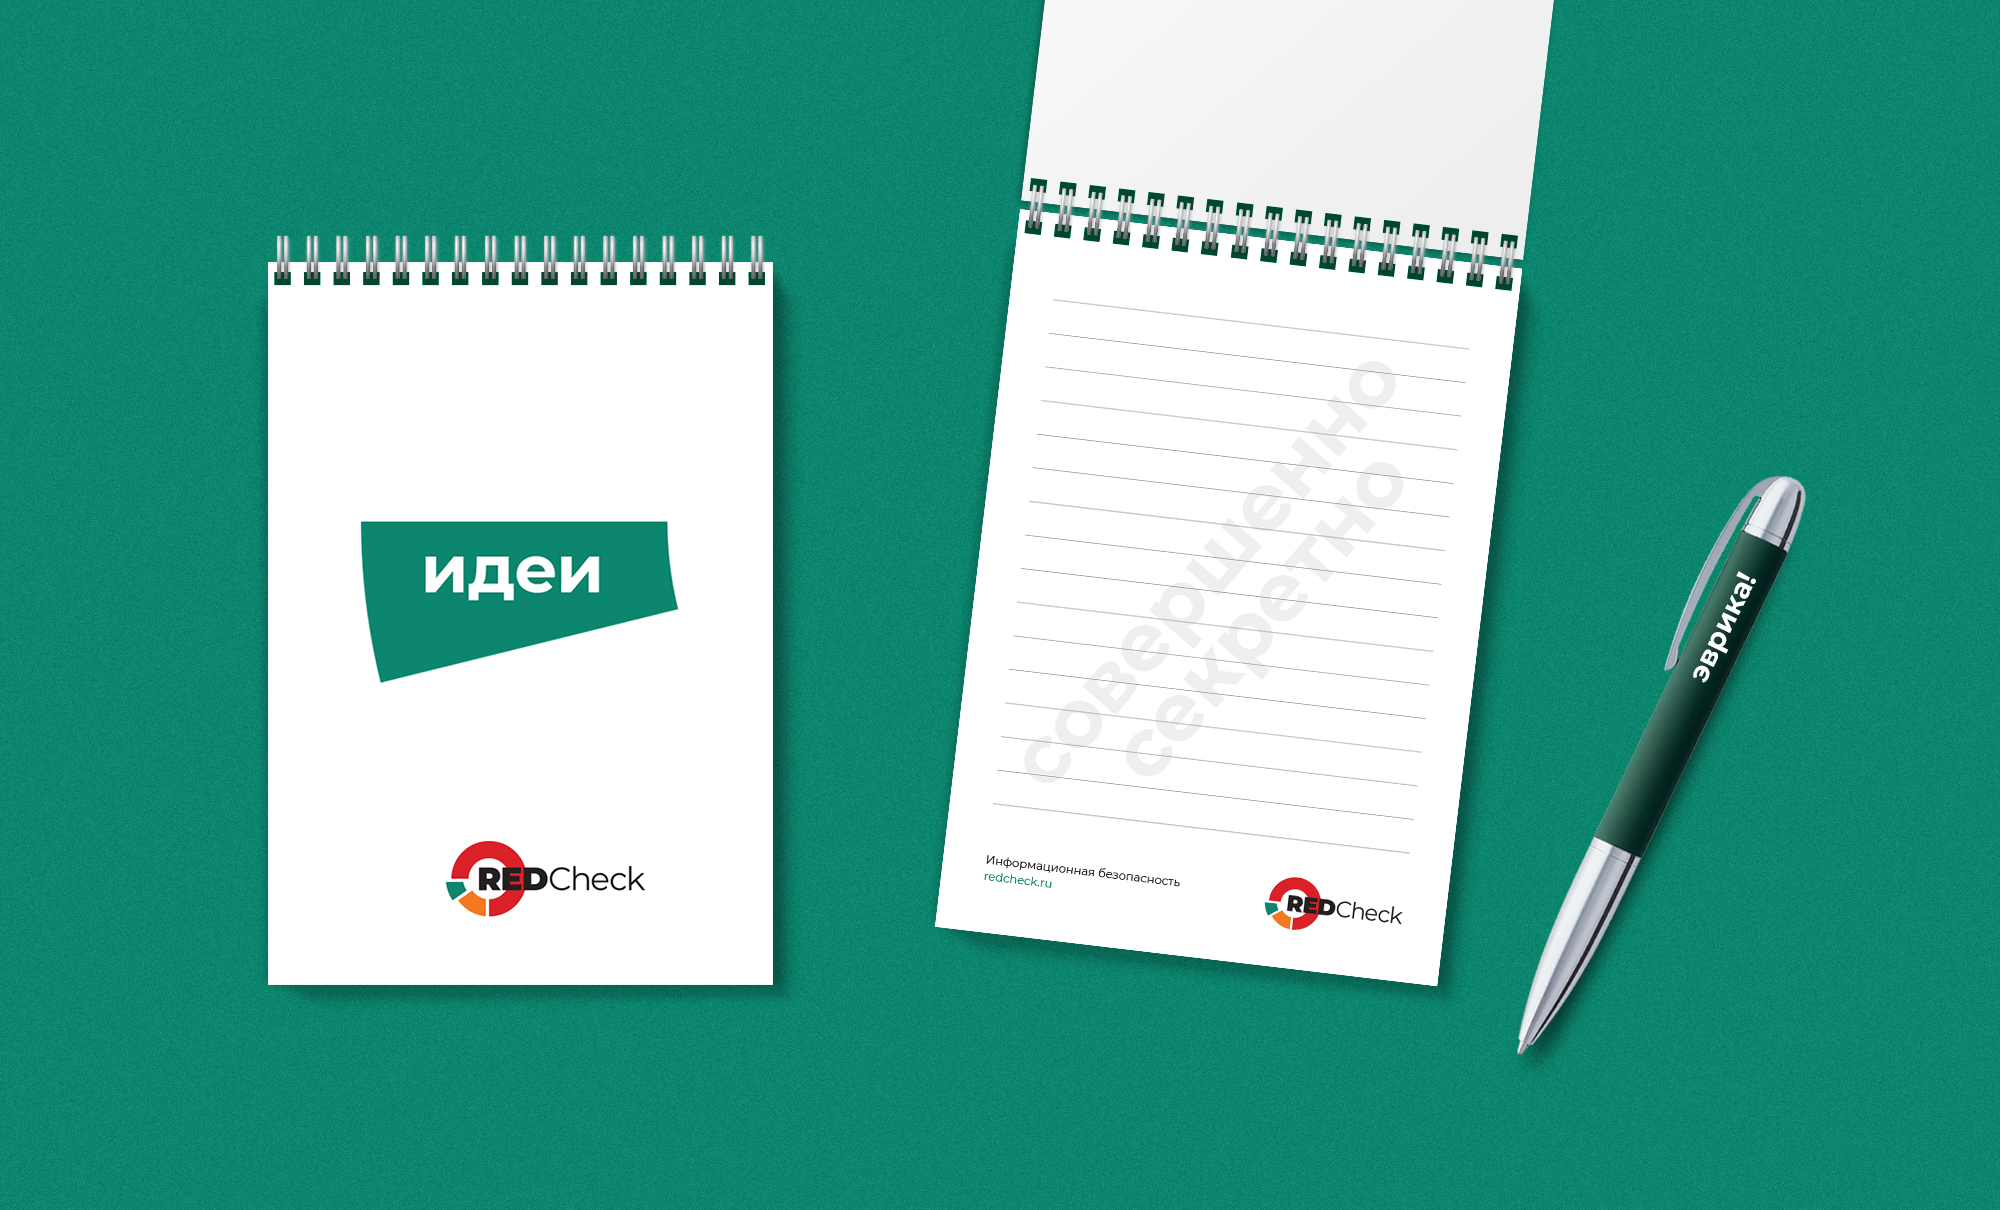 Логотип и фирменный стиль Российского сканера информационной безопасности RedCheck от компании АЛТЭКС-СОФТ. Брендинговое агентство WeDESIGN | МыДИЗАЙН, агентство мыдизайн, wedesign, креативное агентство, дизайн студия, мы, https://мыдизайн.рф, https://wedesign.top, https://wedesigngroup.ru, info@wedesigngroup.ru, +7 (812) 924-59-96